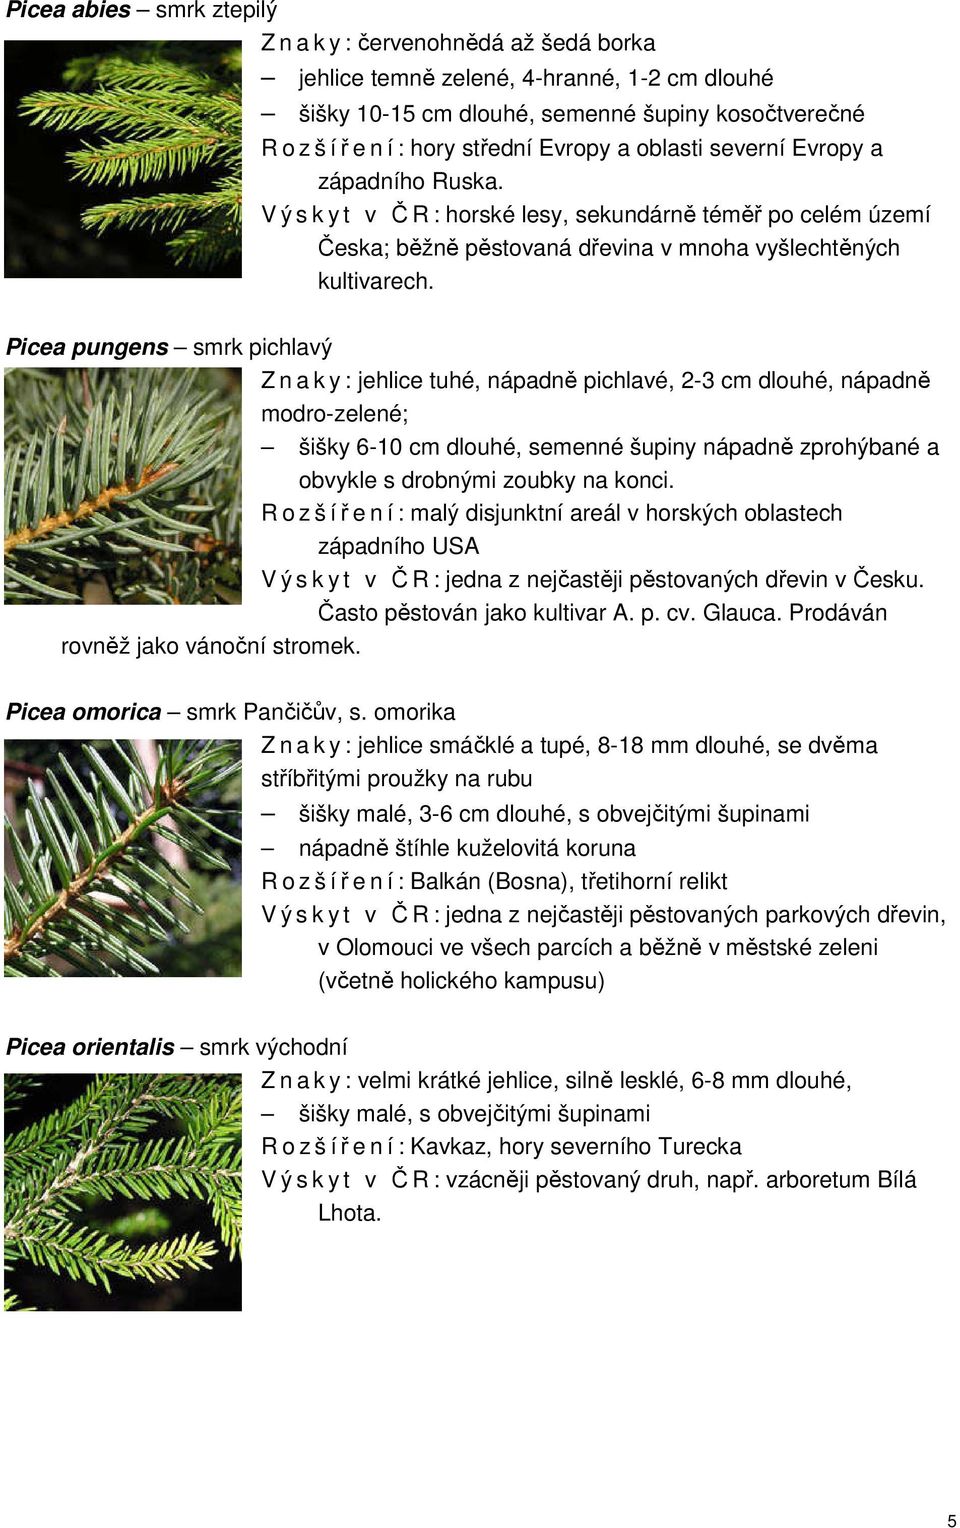 Picea pungens smrk pichlavý Z n a k y : jehlice tuhé, nápadně pichlavé, 2-3 cm dlouhé, nápadně modro-zelené; šišky 6-10 cm dlouhé, semenné šupiny nápadně zprohýbané a obvykle s drobnými zoubky na